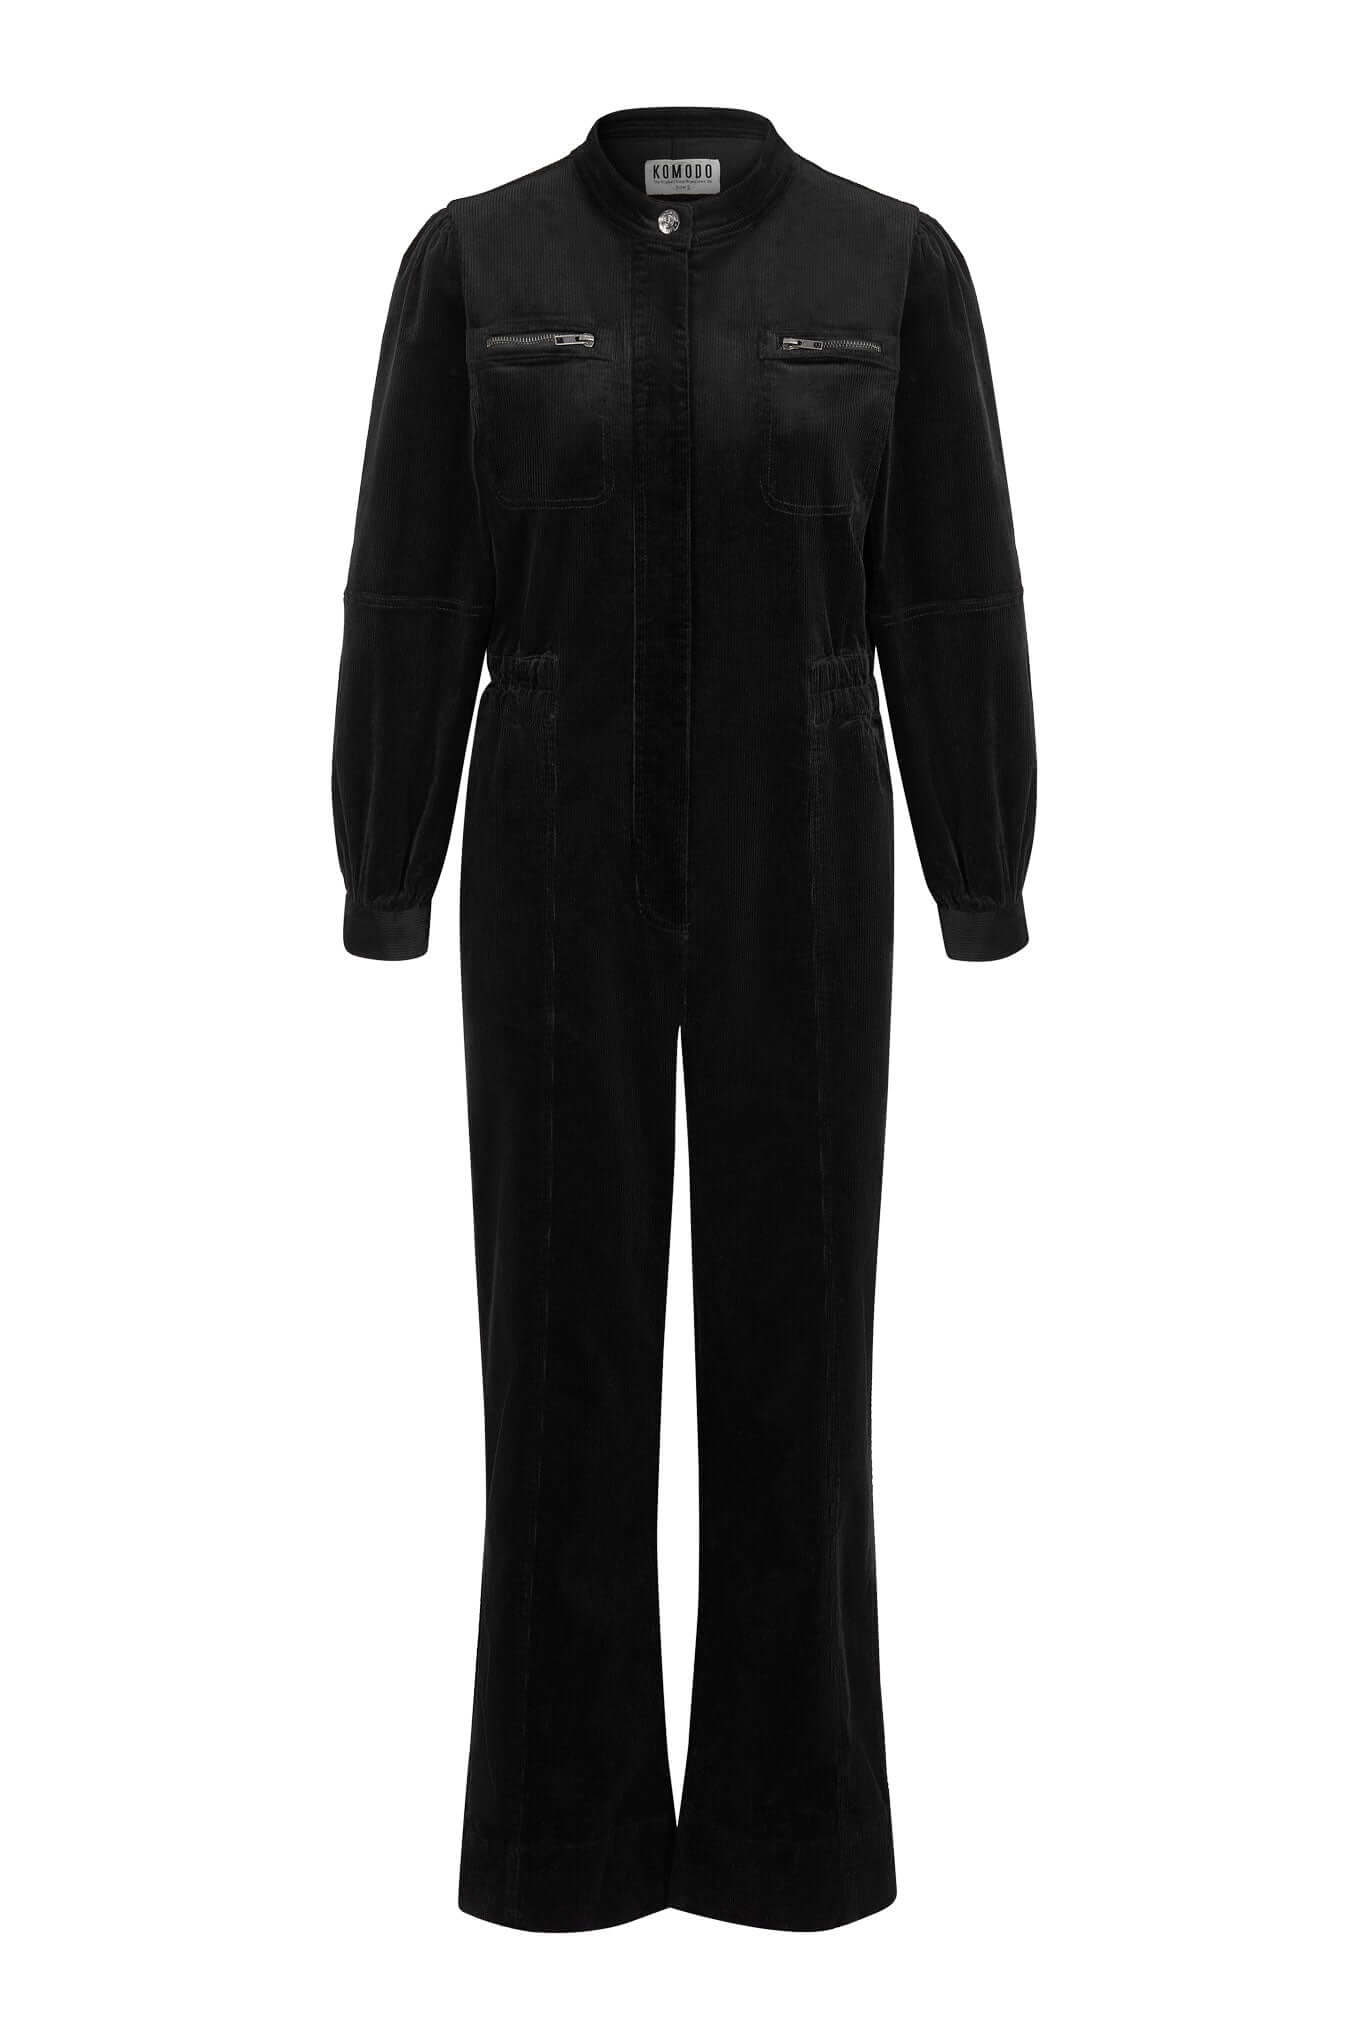 KAWA - Organic Cord Jumpsuit Black